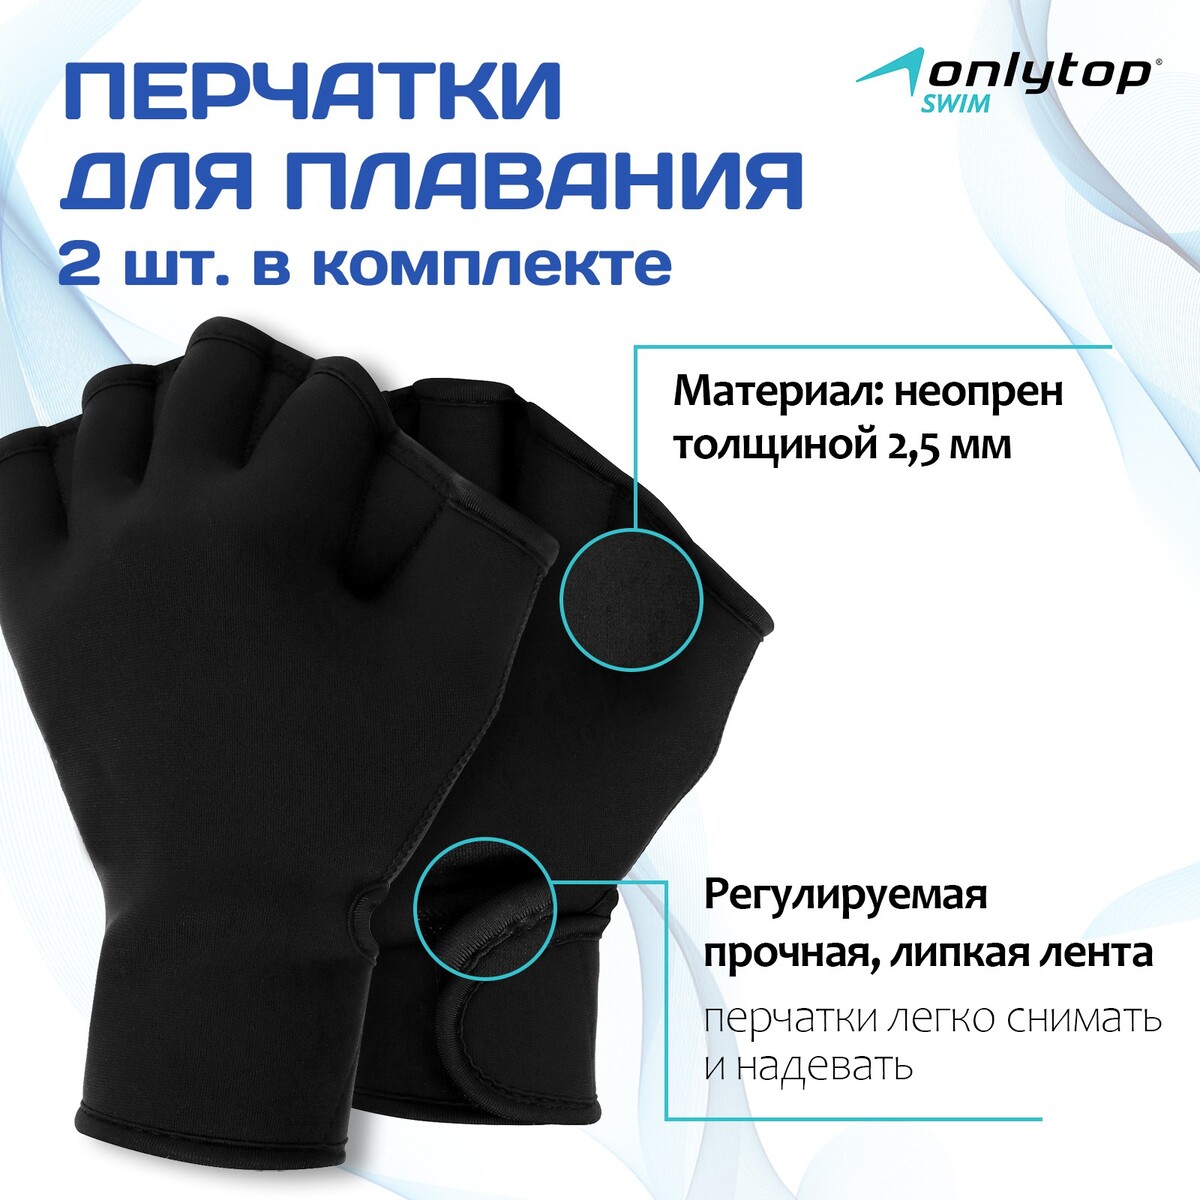 Перчатки для плавания onlytop, неопрен, 2.5 мм, р. s, цвет черный